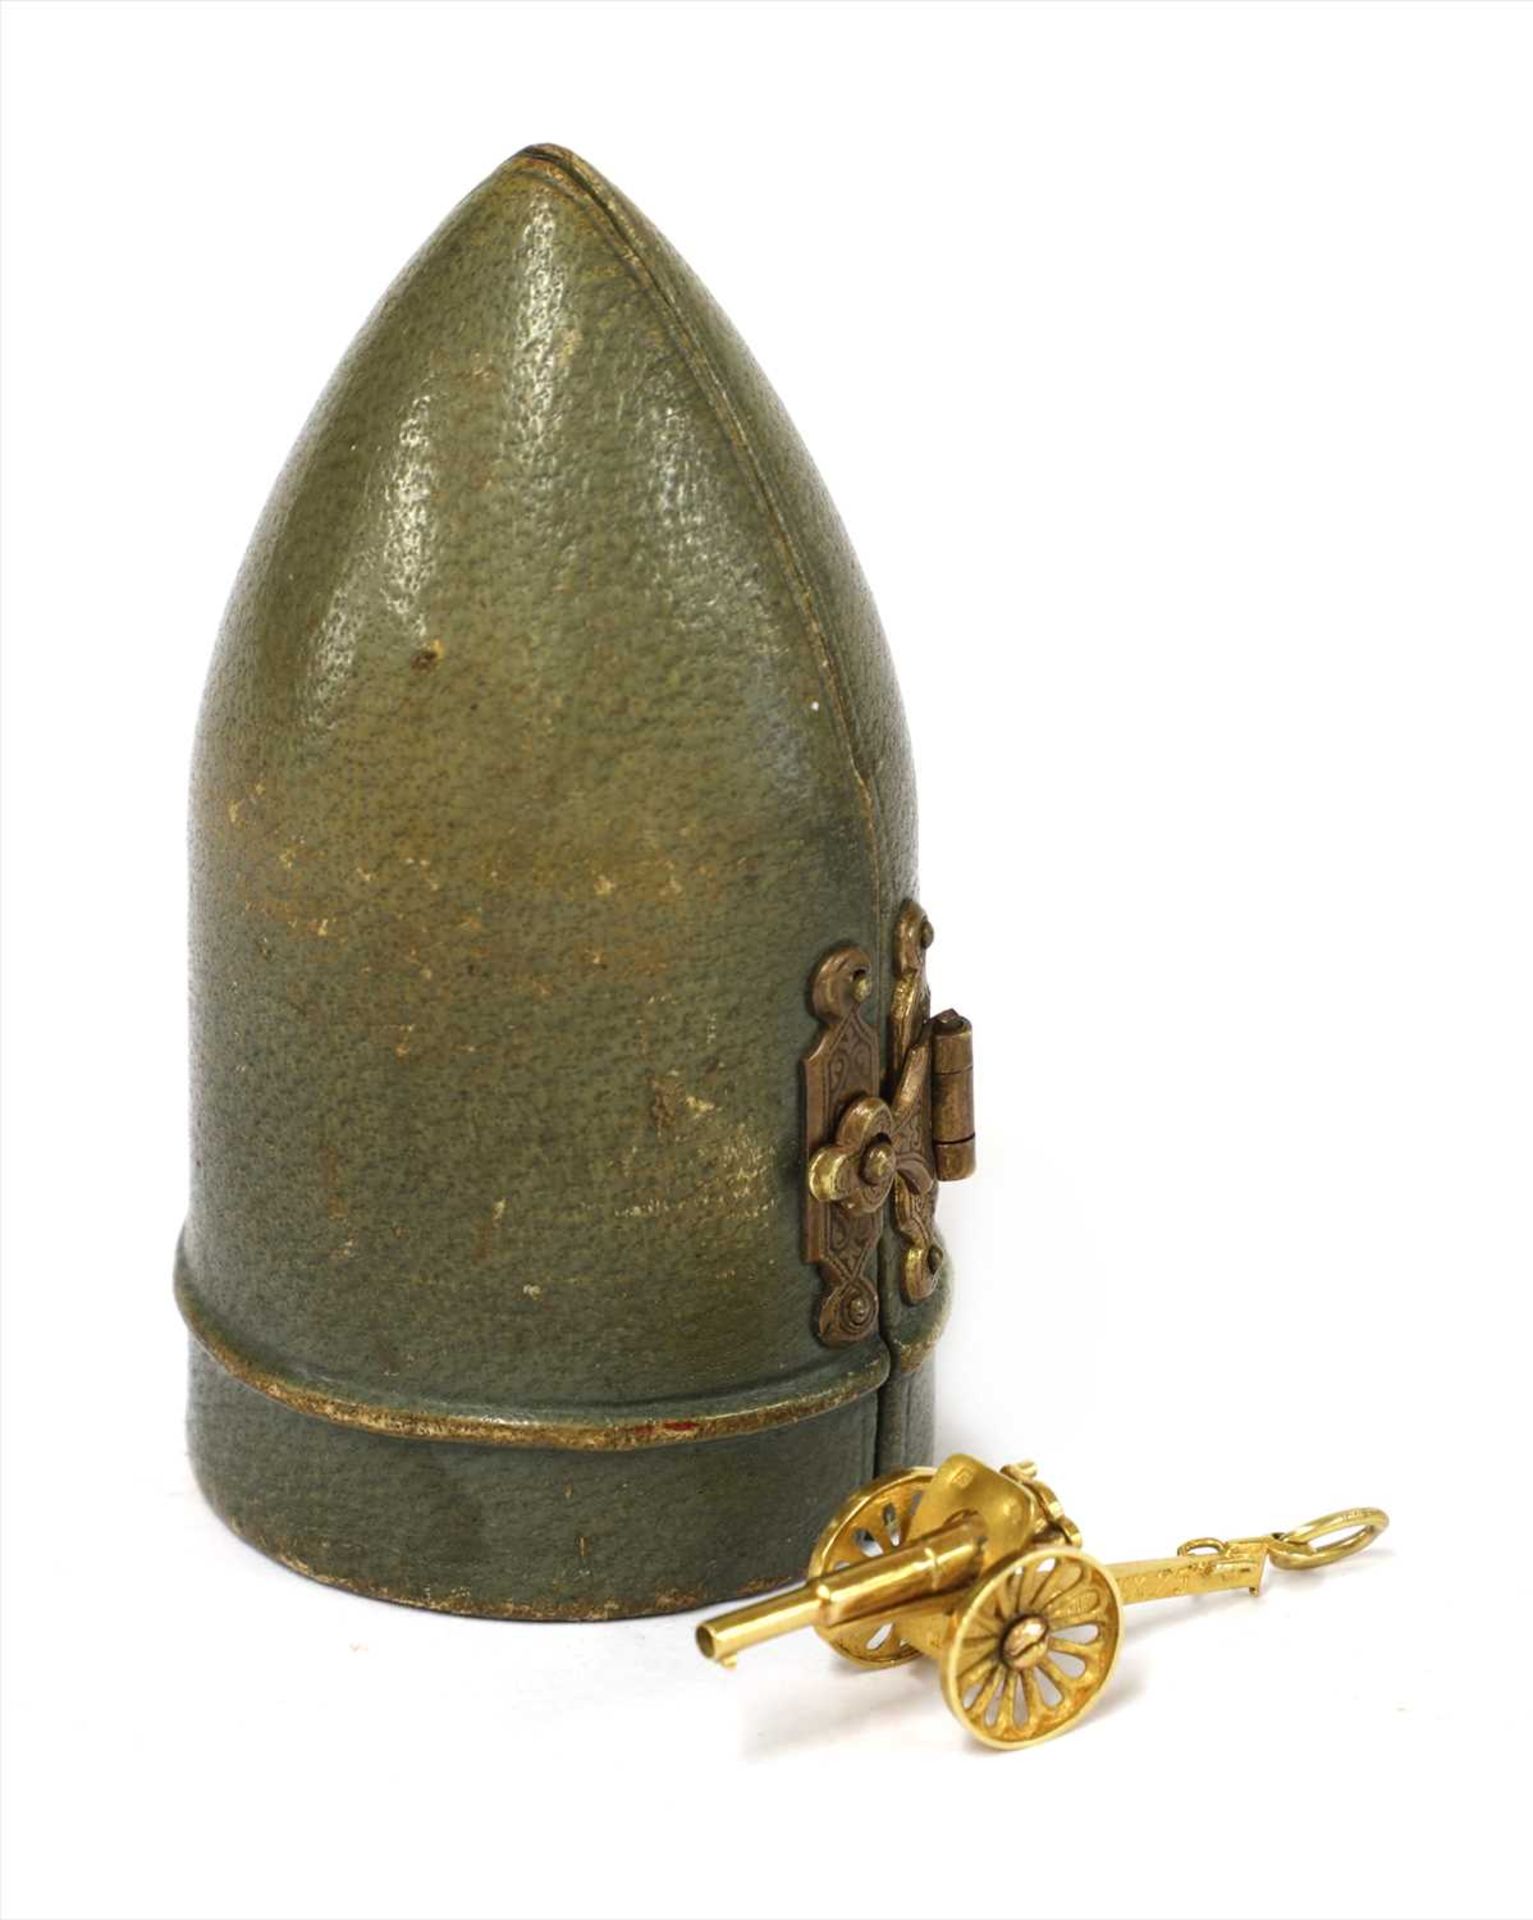 A French World War I novelty 75mm 18ct gold miniature field gun,